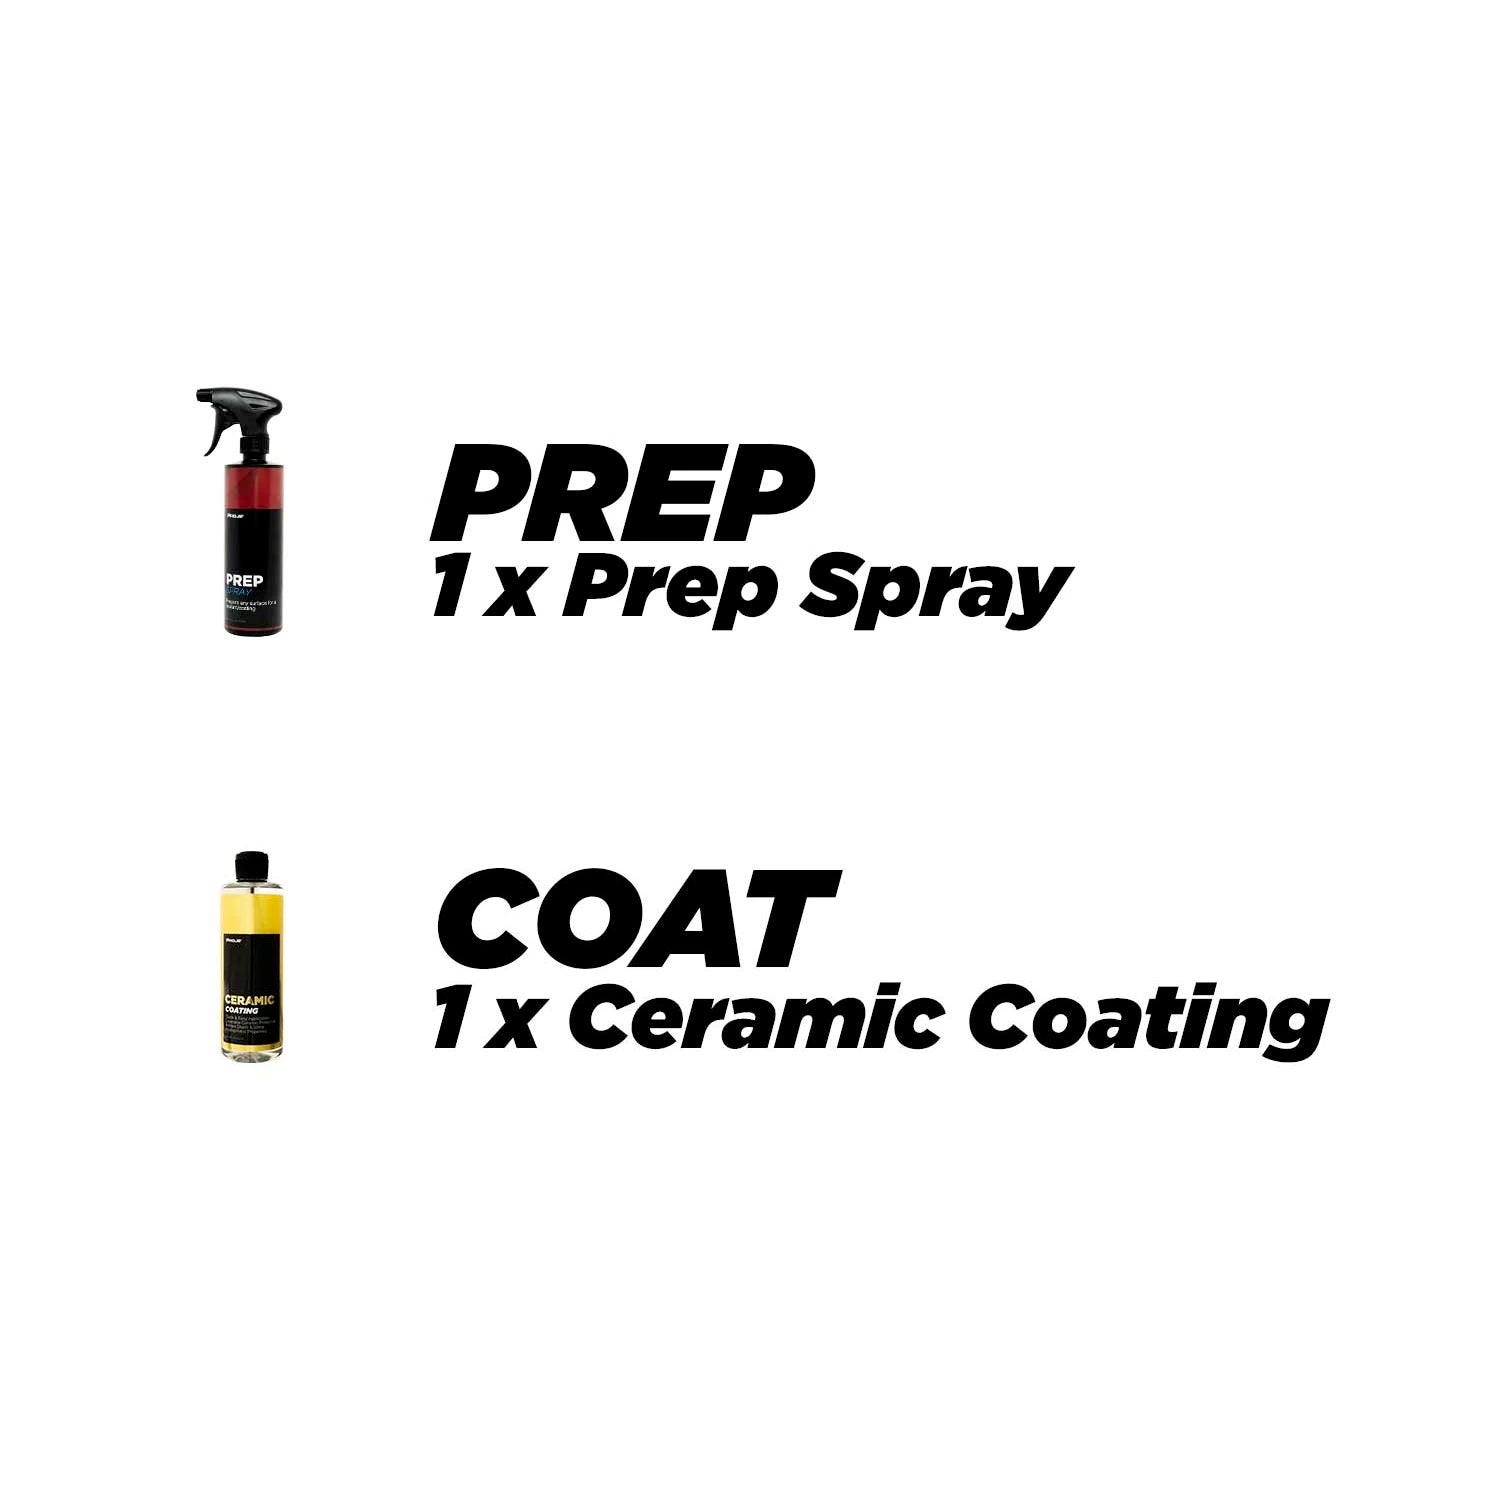  Proje Premium Car Care Deluxe Ceramic Kit 5-Piece, Premium  Ceramic Coating Kit for Cars Trucks RVs and Motorcycles, Prep Spray  Ceramic Coating